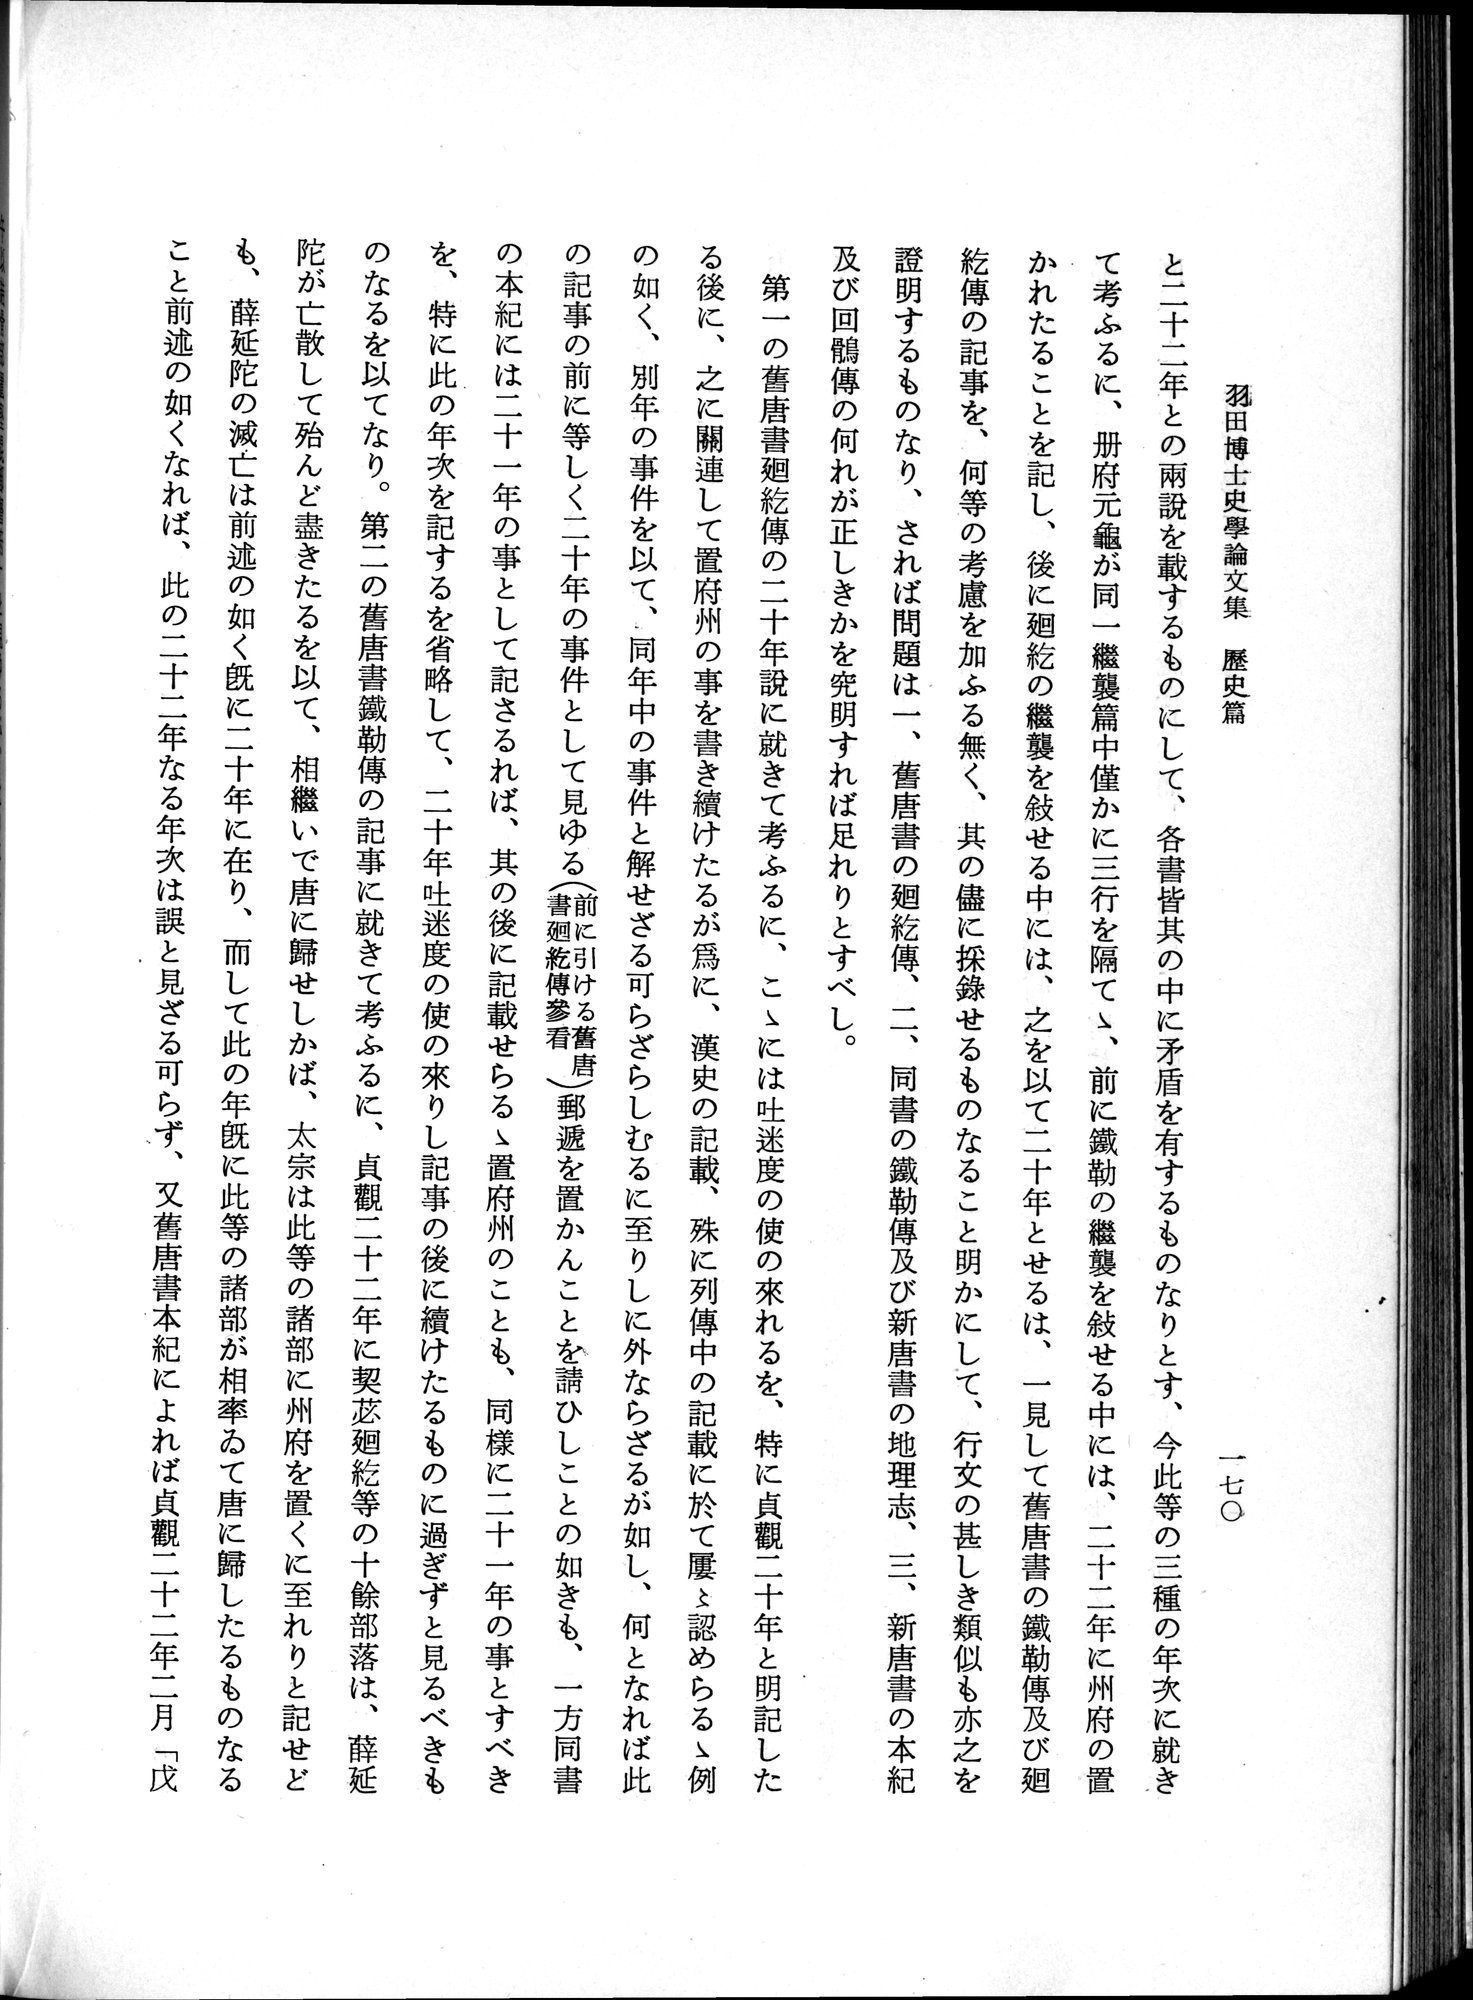 羽田博士史学論文集 : vol.1 / Page 208 (Grayscale High Resolution Image)